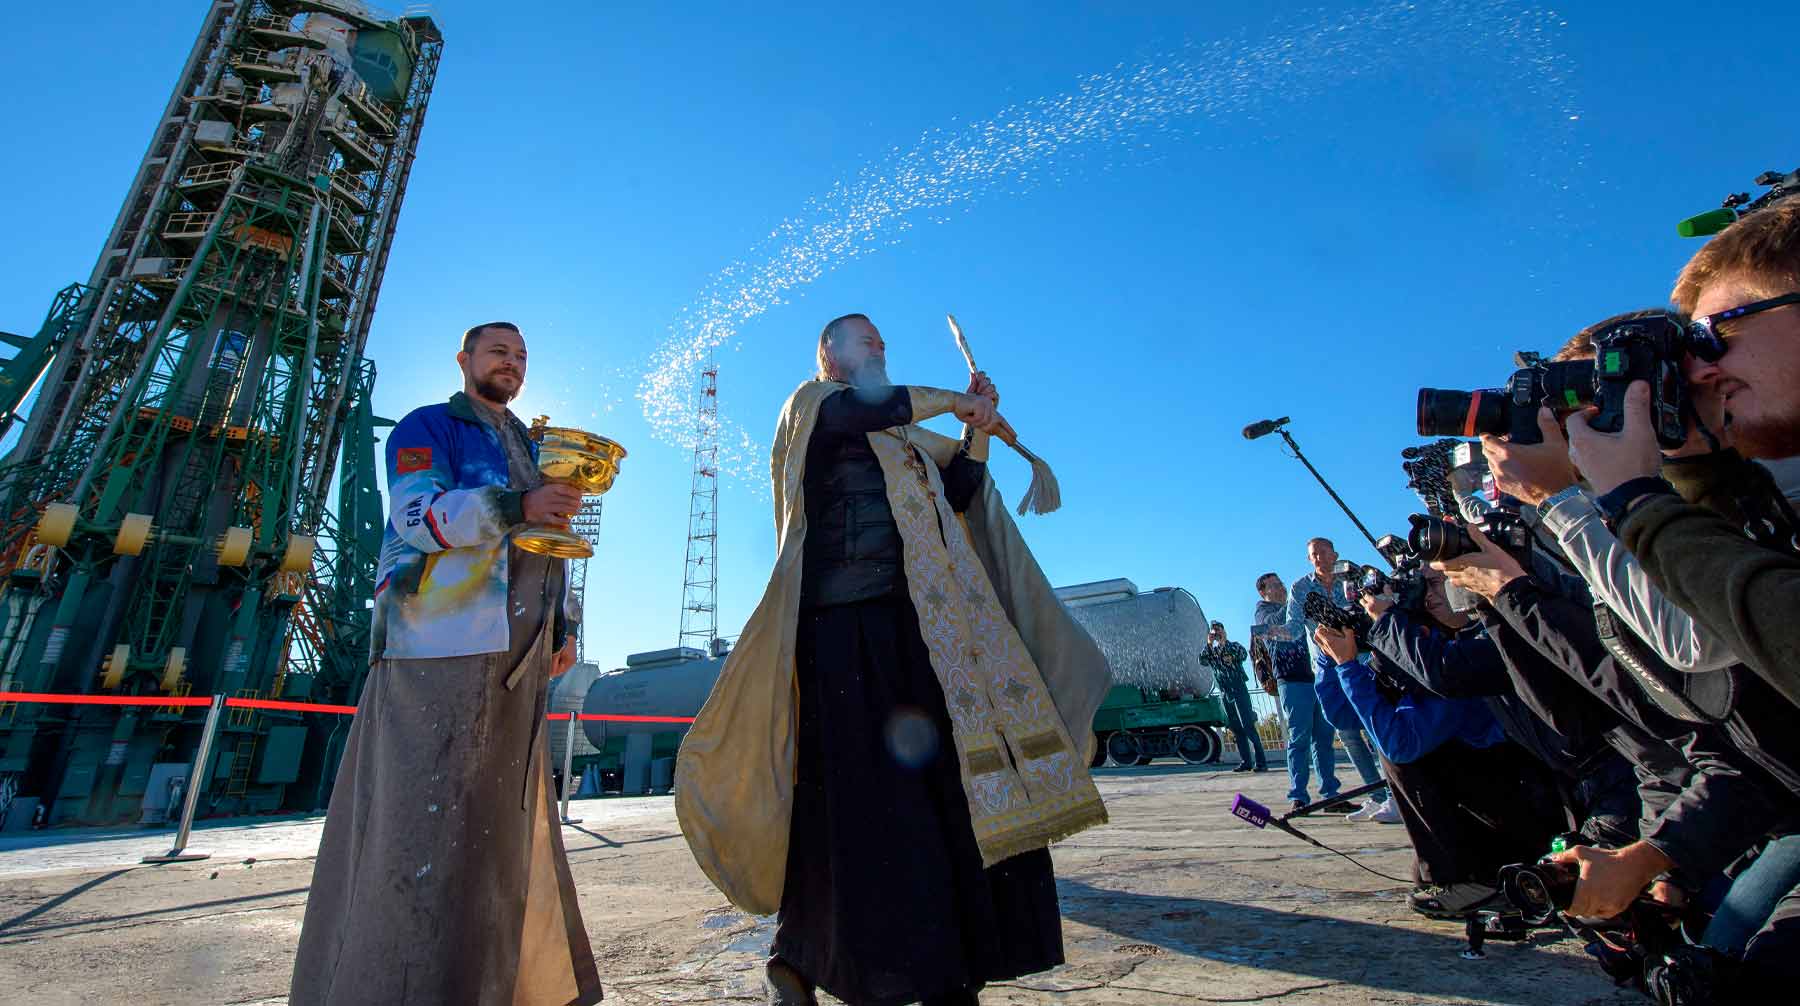 Ранее Межсоборное присутствие Русской православной церкви подготовило проект об отказе от благословения ОМП Фото: © NASA